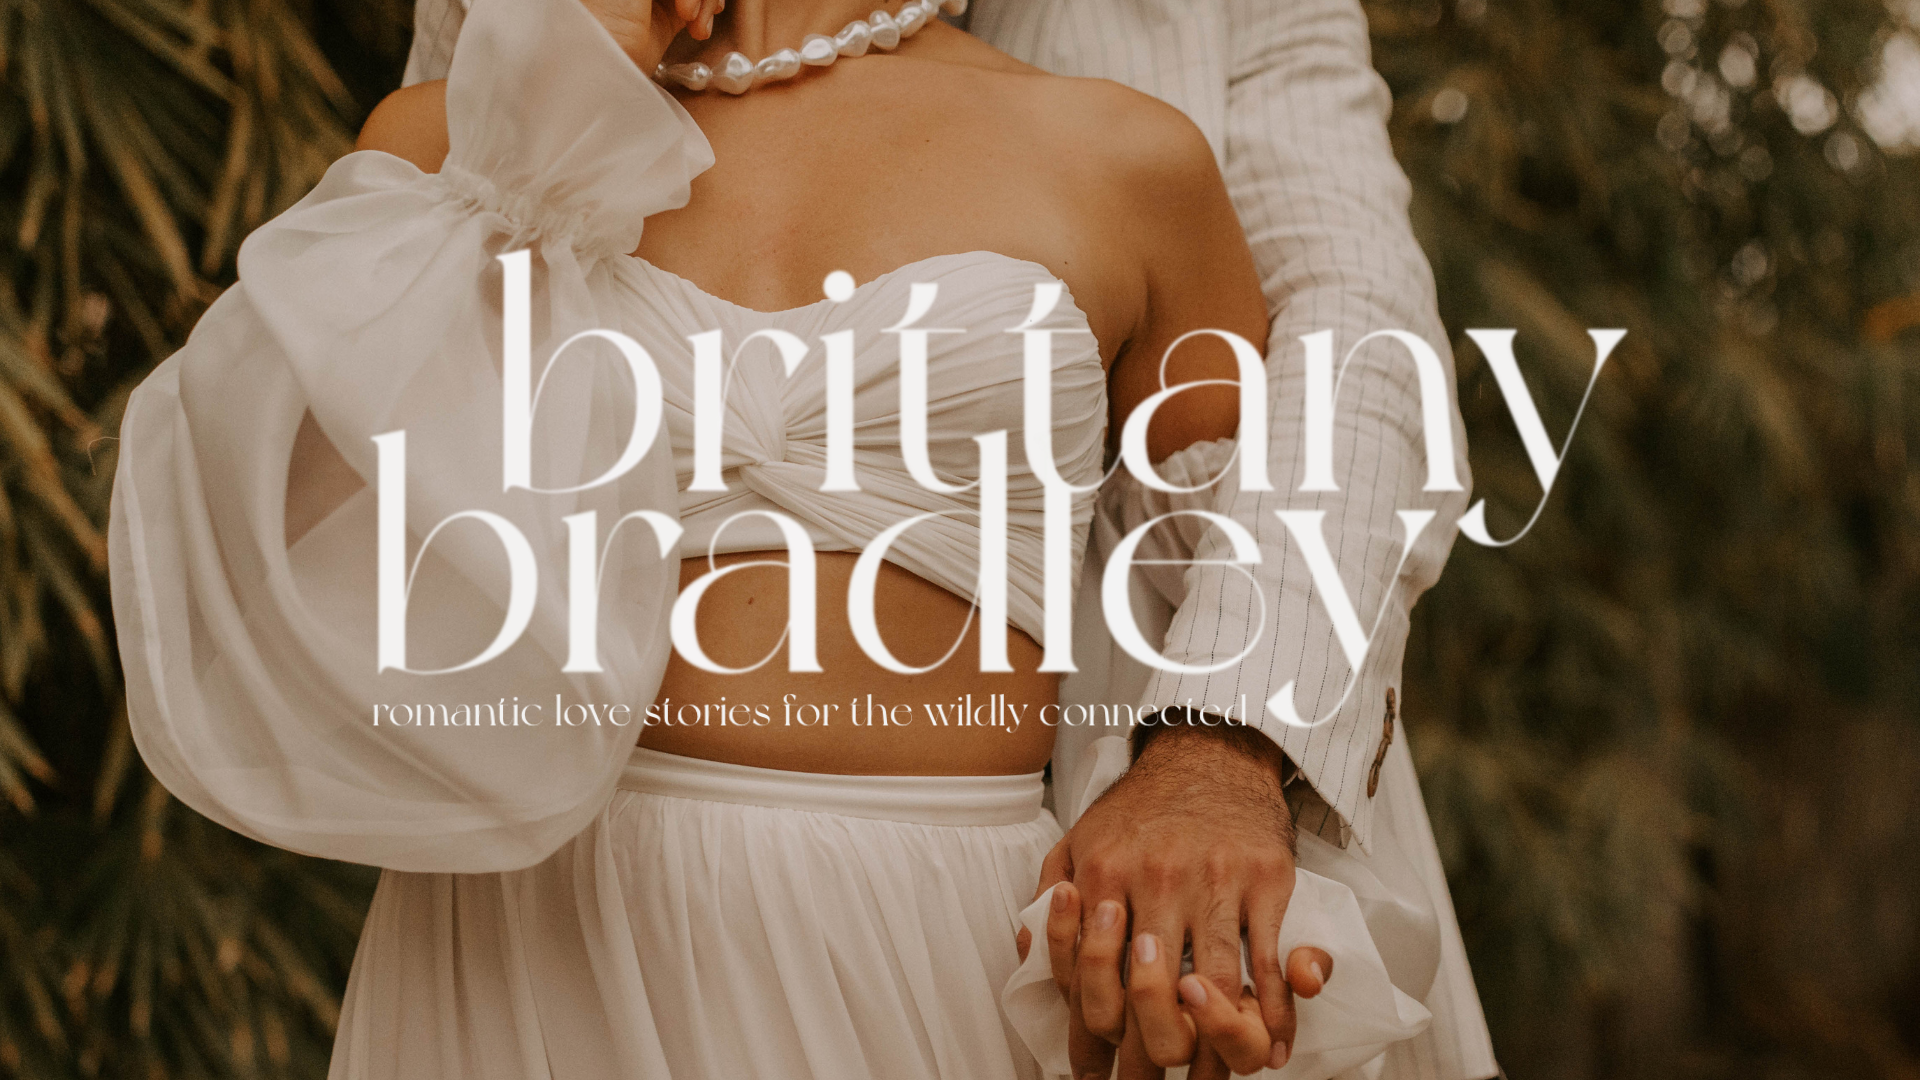 Brittany bradley instagram